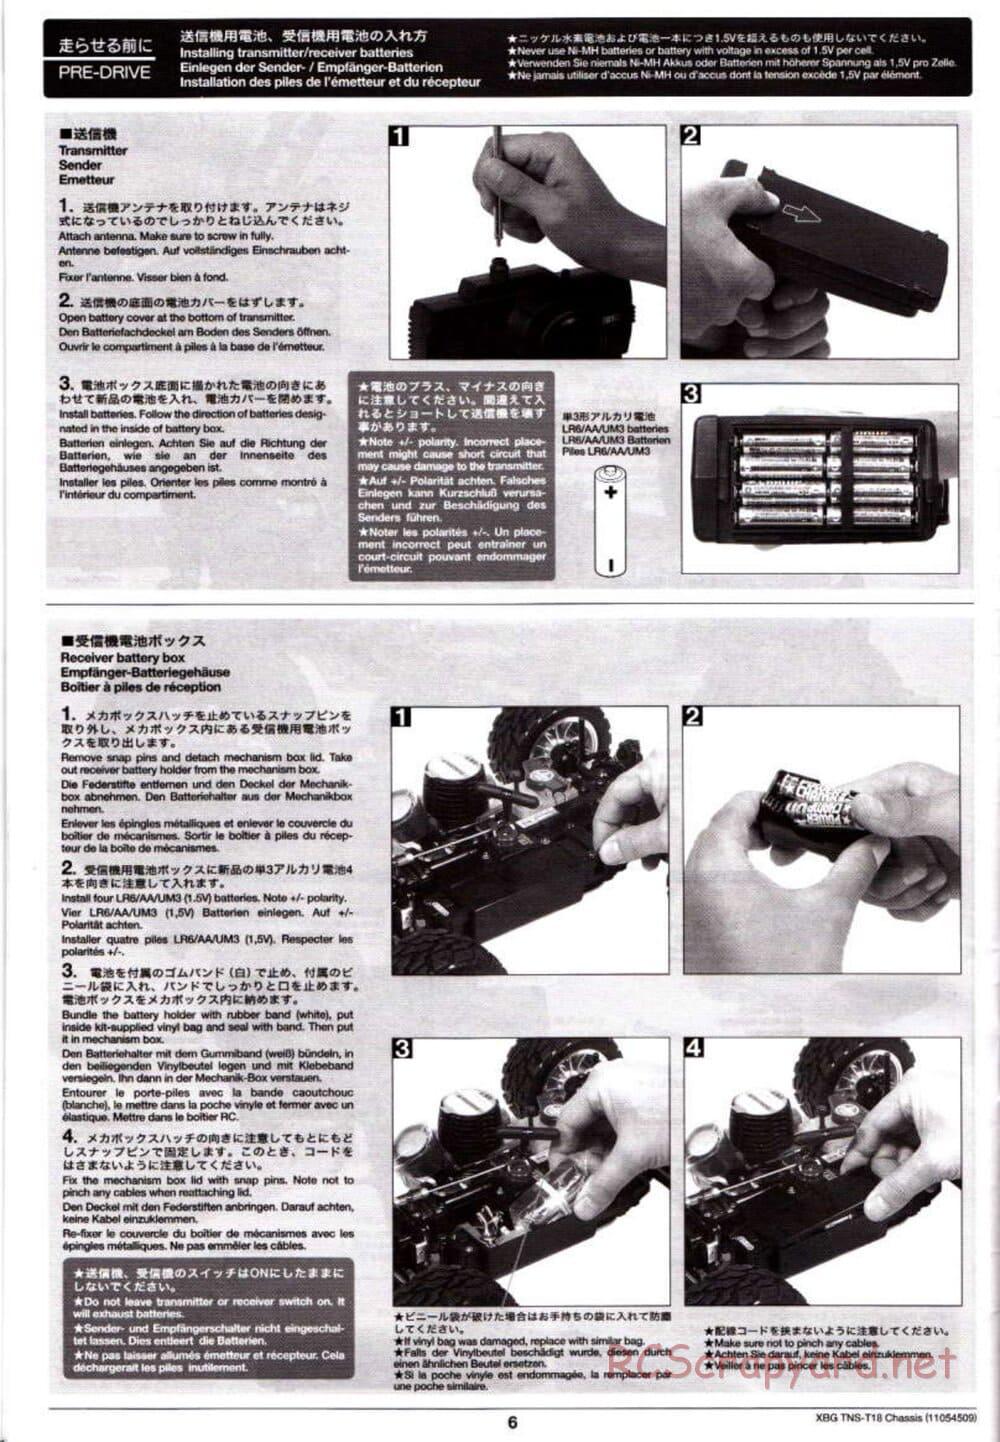 Tamiya - TNS-T18 Chassis - Manual - Page 6